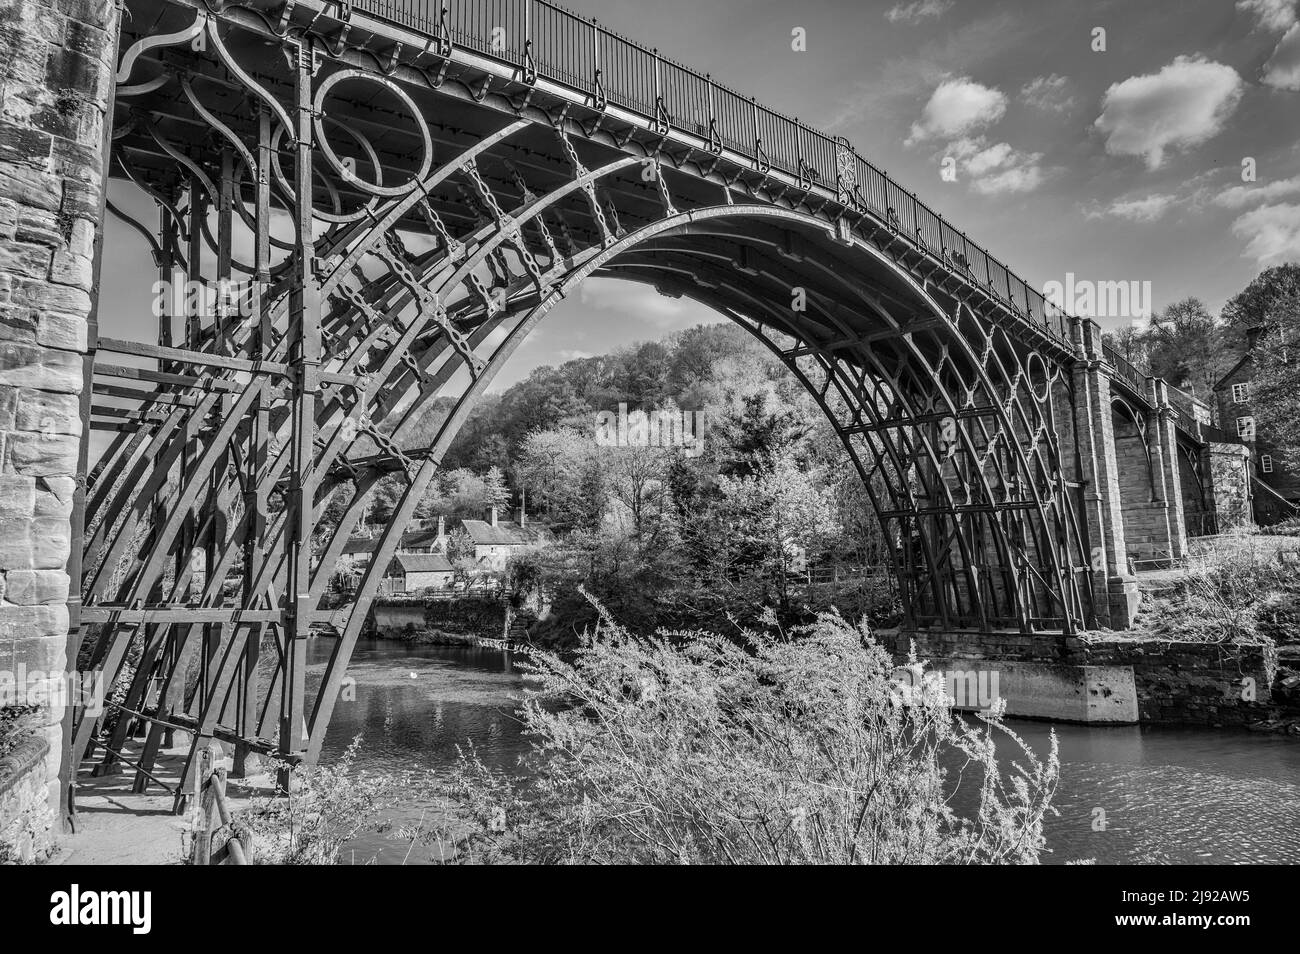 L'image est du célèbre ironbridge qui s'étend sur la rivière Seven à Ironbridge. Fabriqué pièce par pièce à Coalbrookdale Ironworks en 1779 Banque D'Images